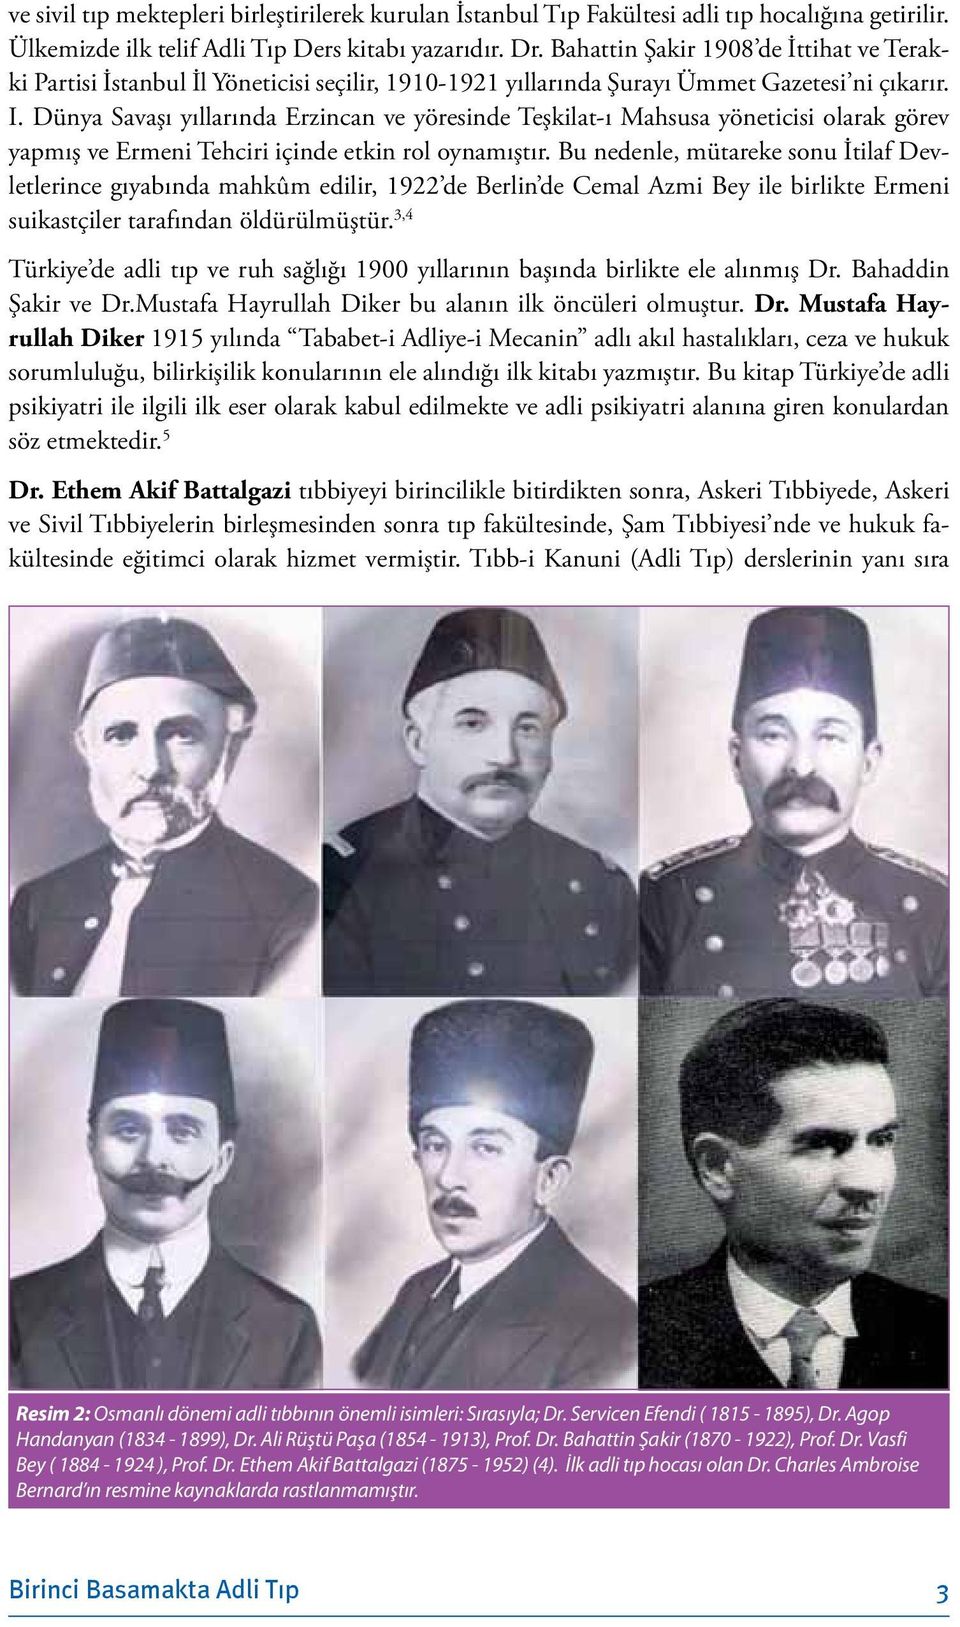 Dünya Savaşı yıllarında Erzincan ve yöresinde Teşkilat-ı Mahsusa yöneticisi olarak görev yapmış ve Ermeni Tehciri içinde etkin rol oynamıştır.